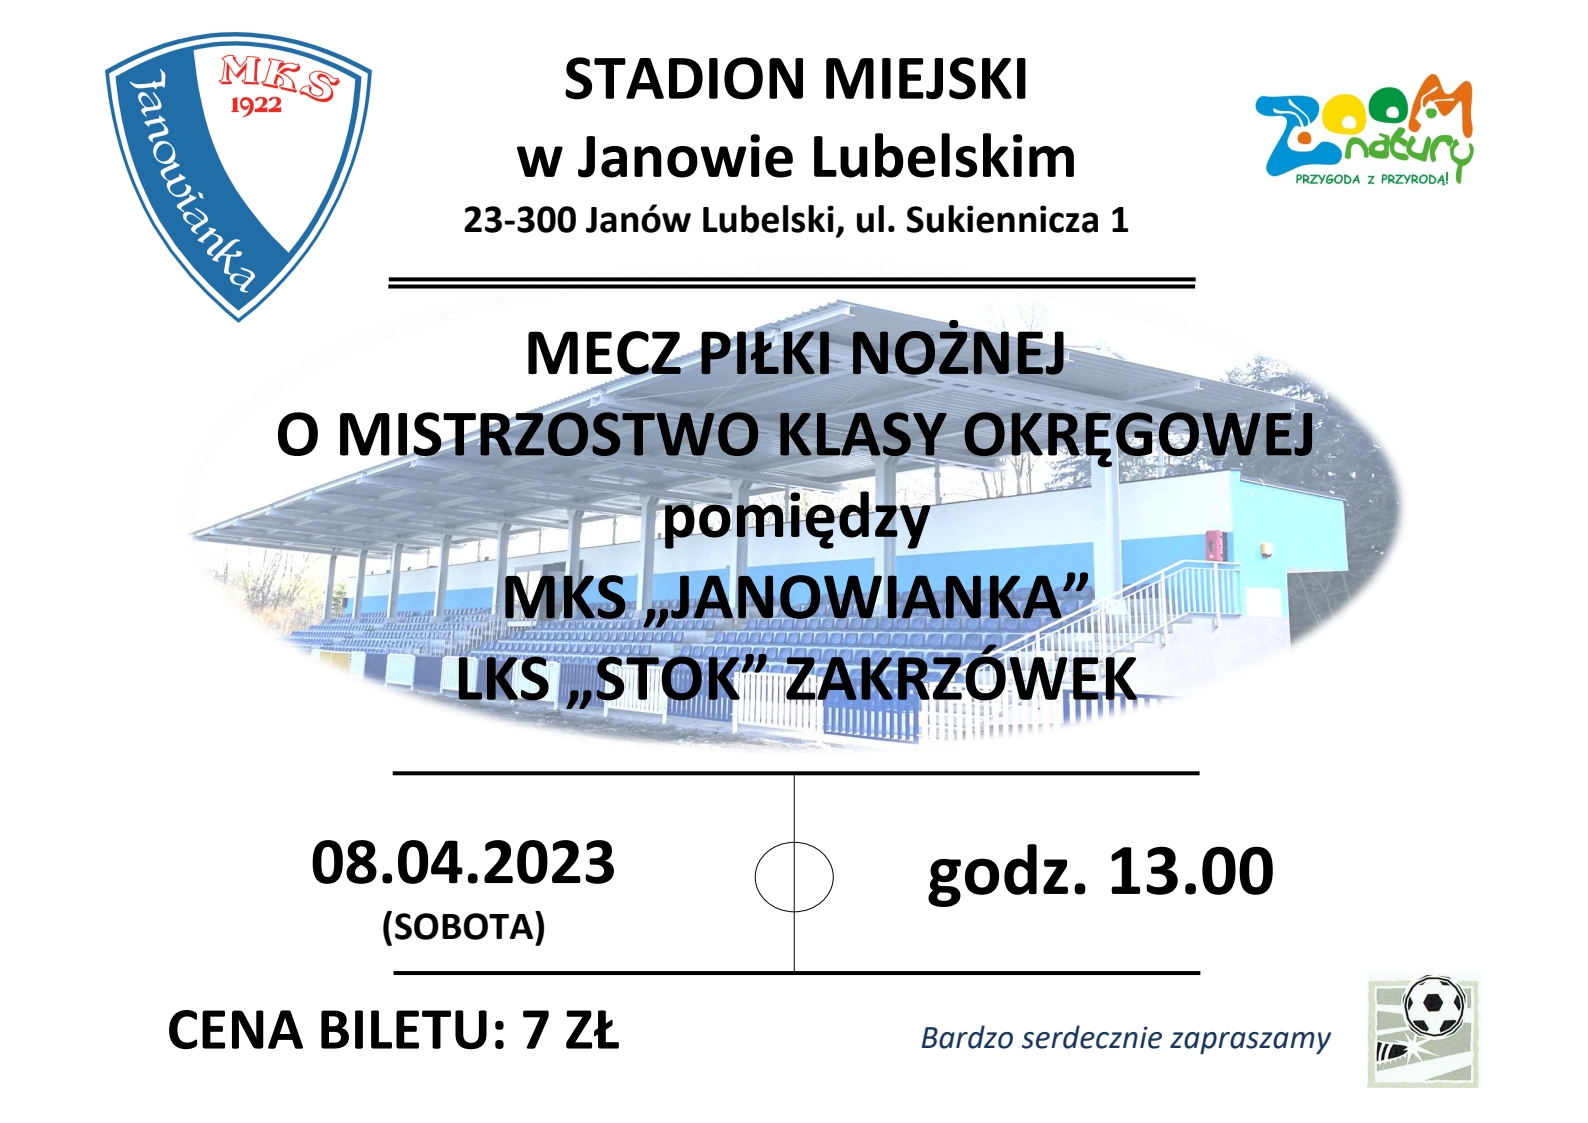 Plakat promujący mecz o mistrzostwo klasy okręgowej pomiędzy MKS Janowianka - LKS Stok Zakrzówek, 8 kwietnia 2023 o godzinie 13:00, cena biletu 7 zł.